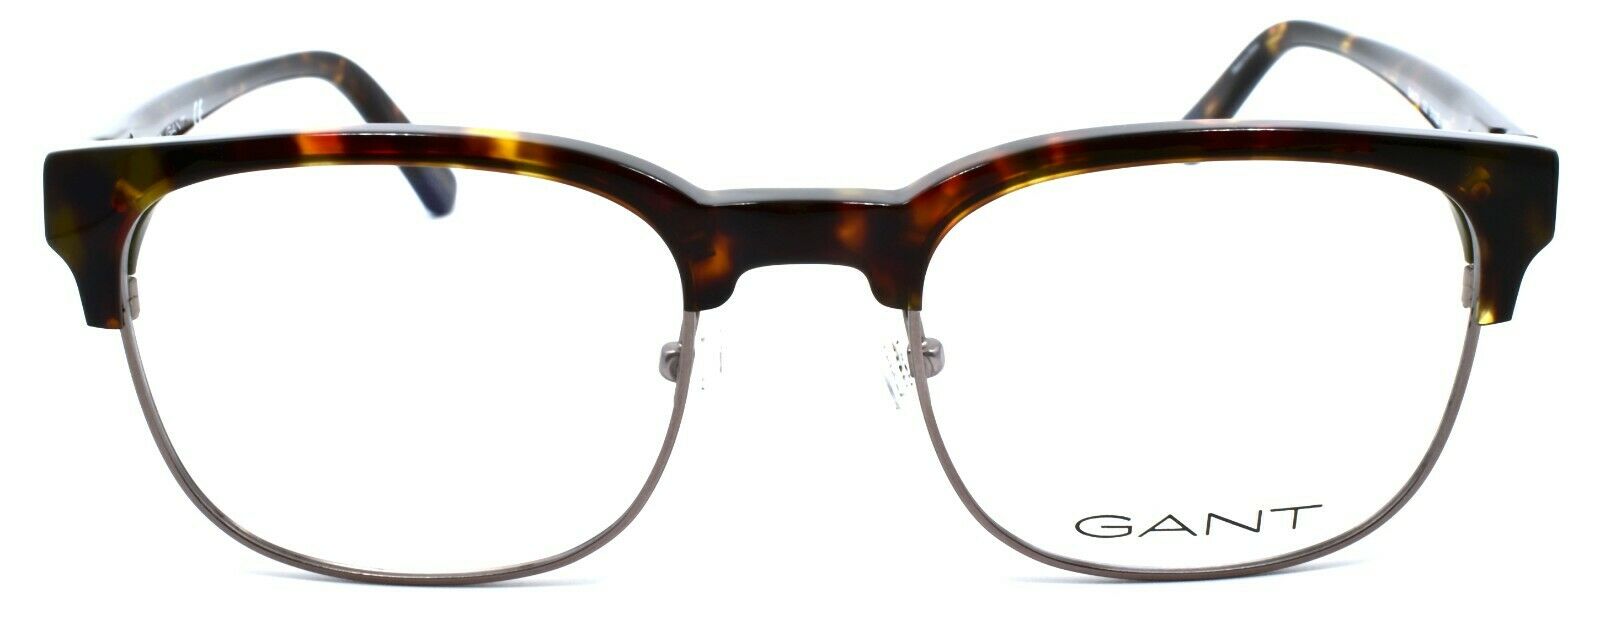 2-GANT GA3176 052 Men's Eyeglasses Frames 51-20-145 Dark Havana-664689951437-IKSpecs